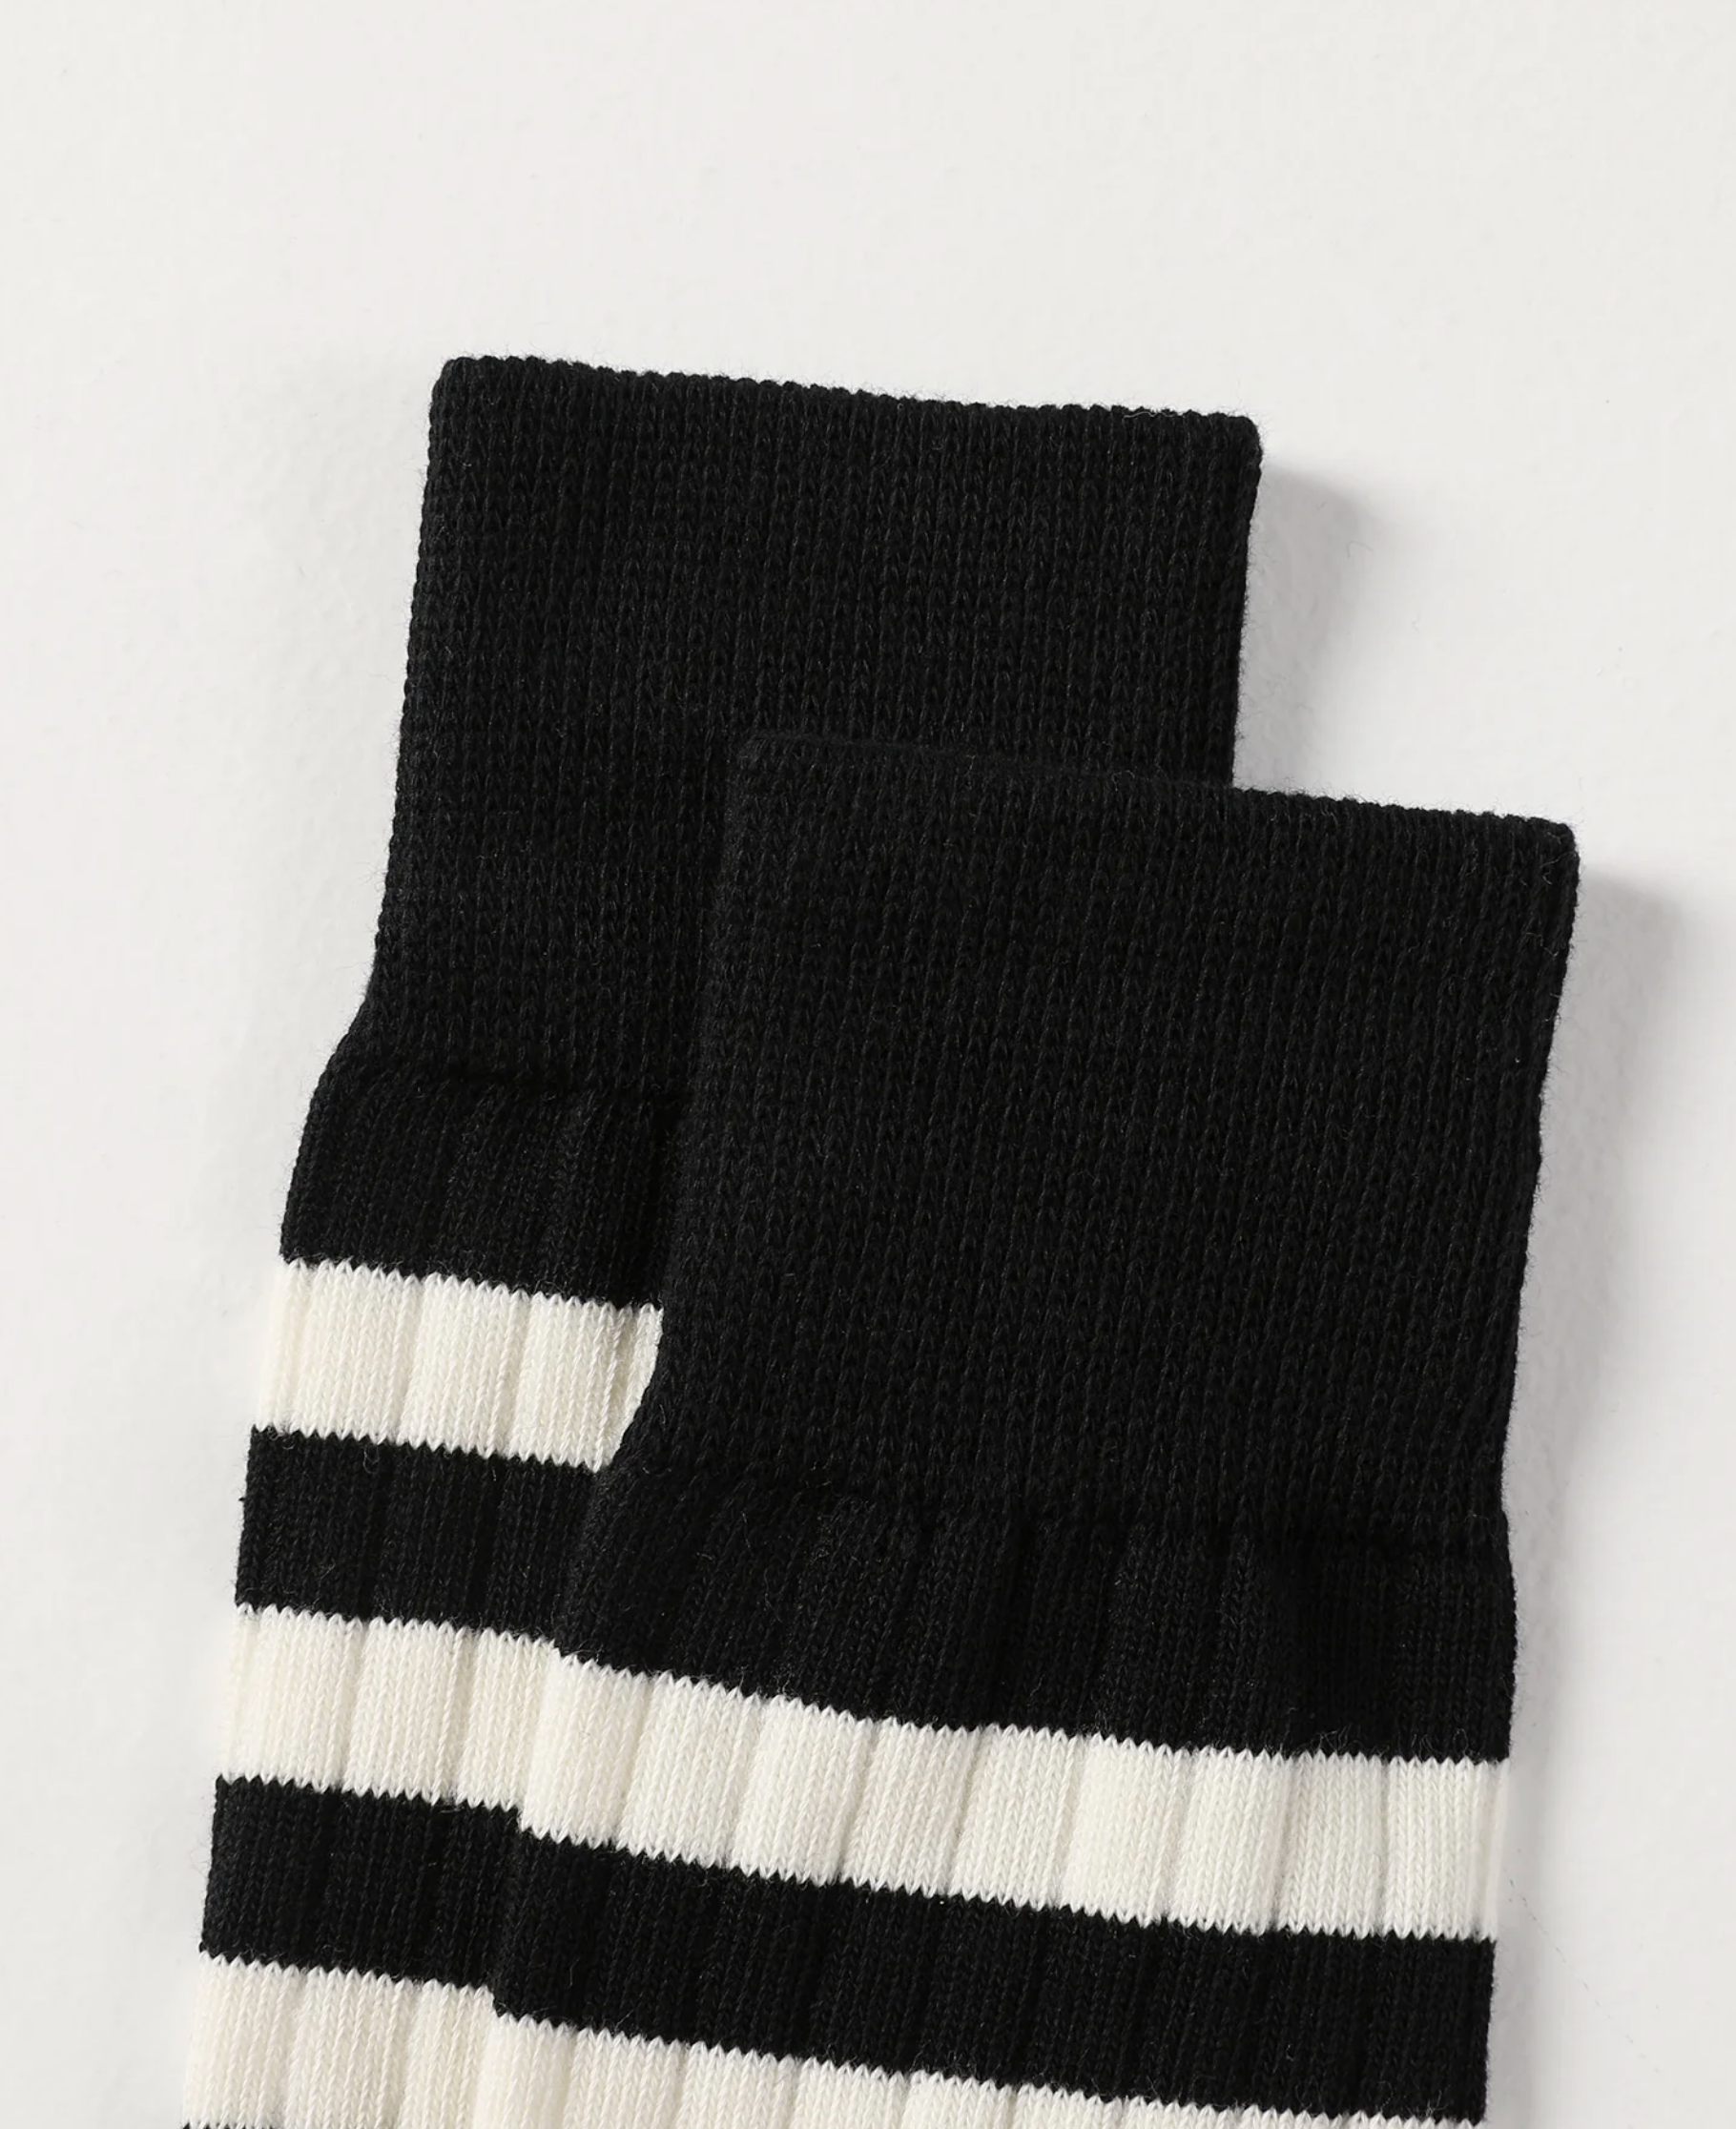 Retro Striped Cotton Socks